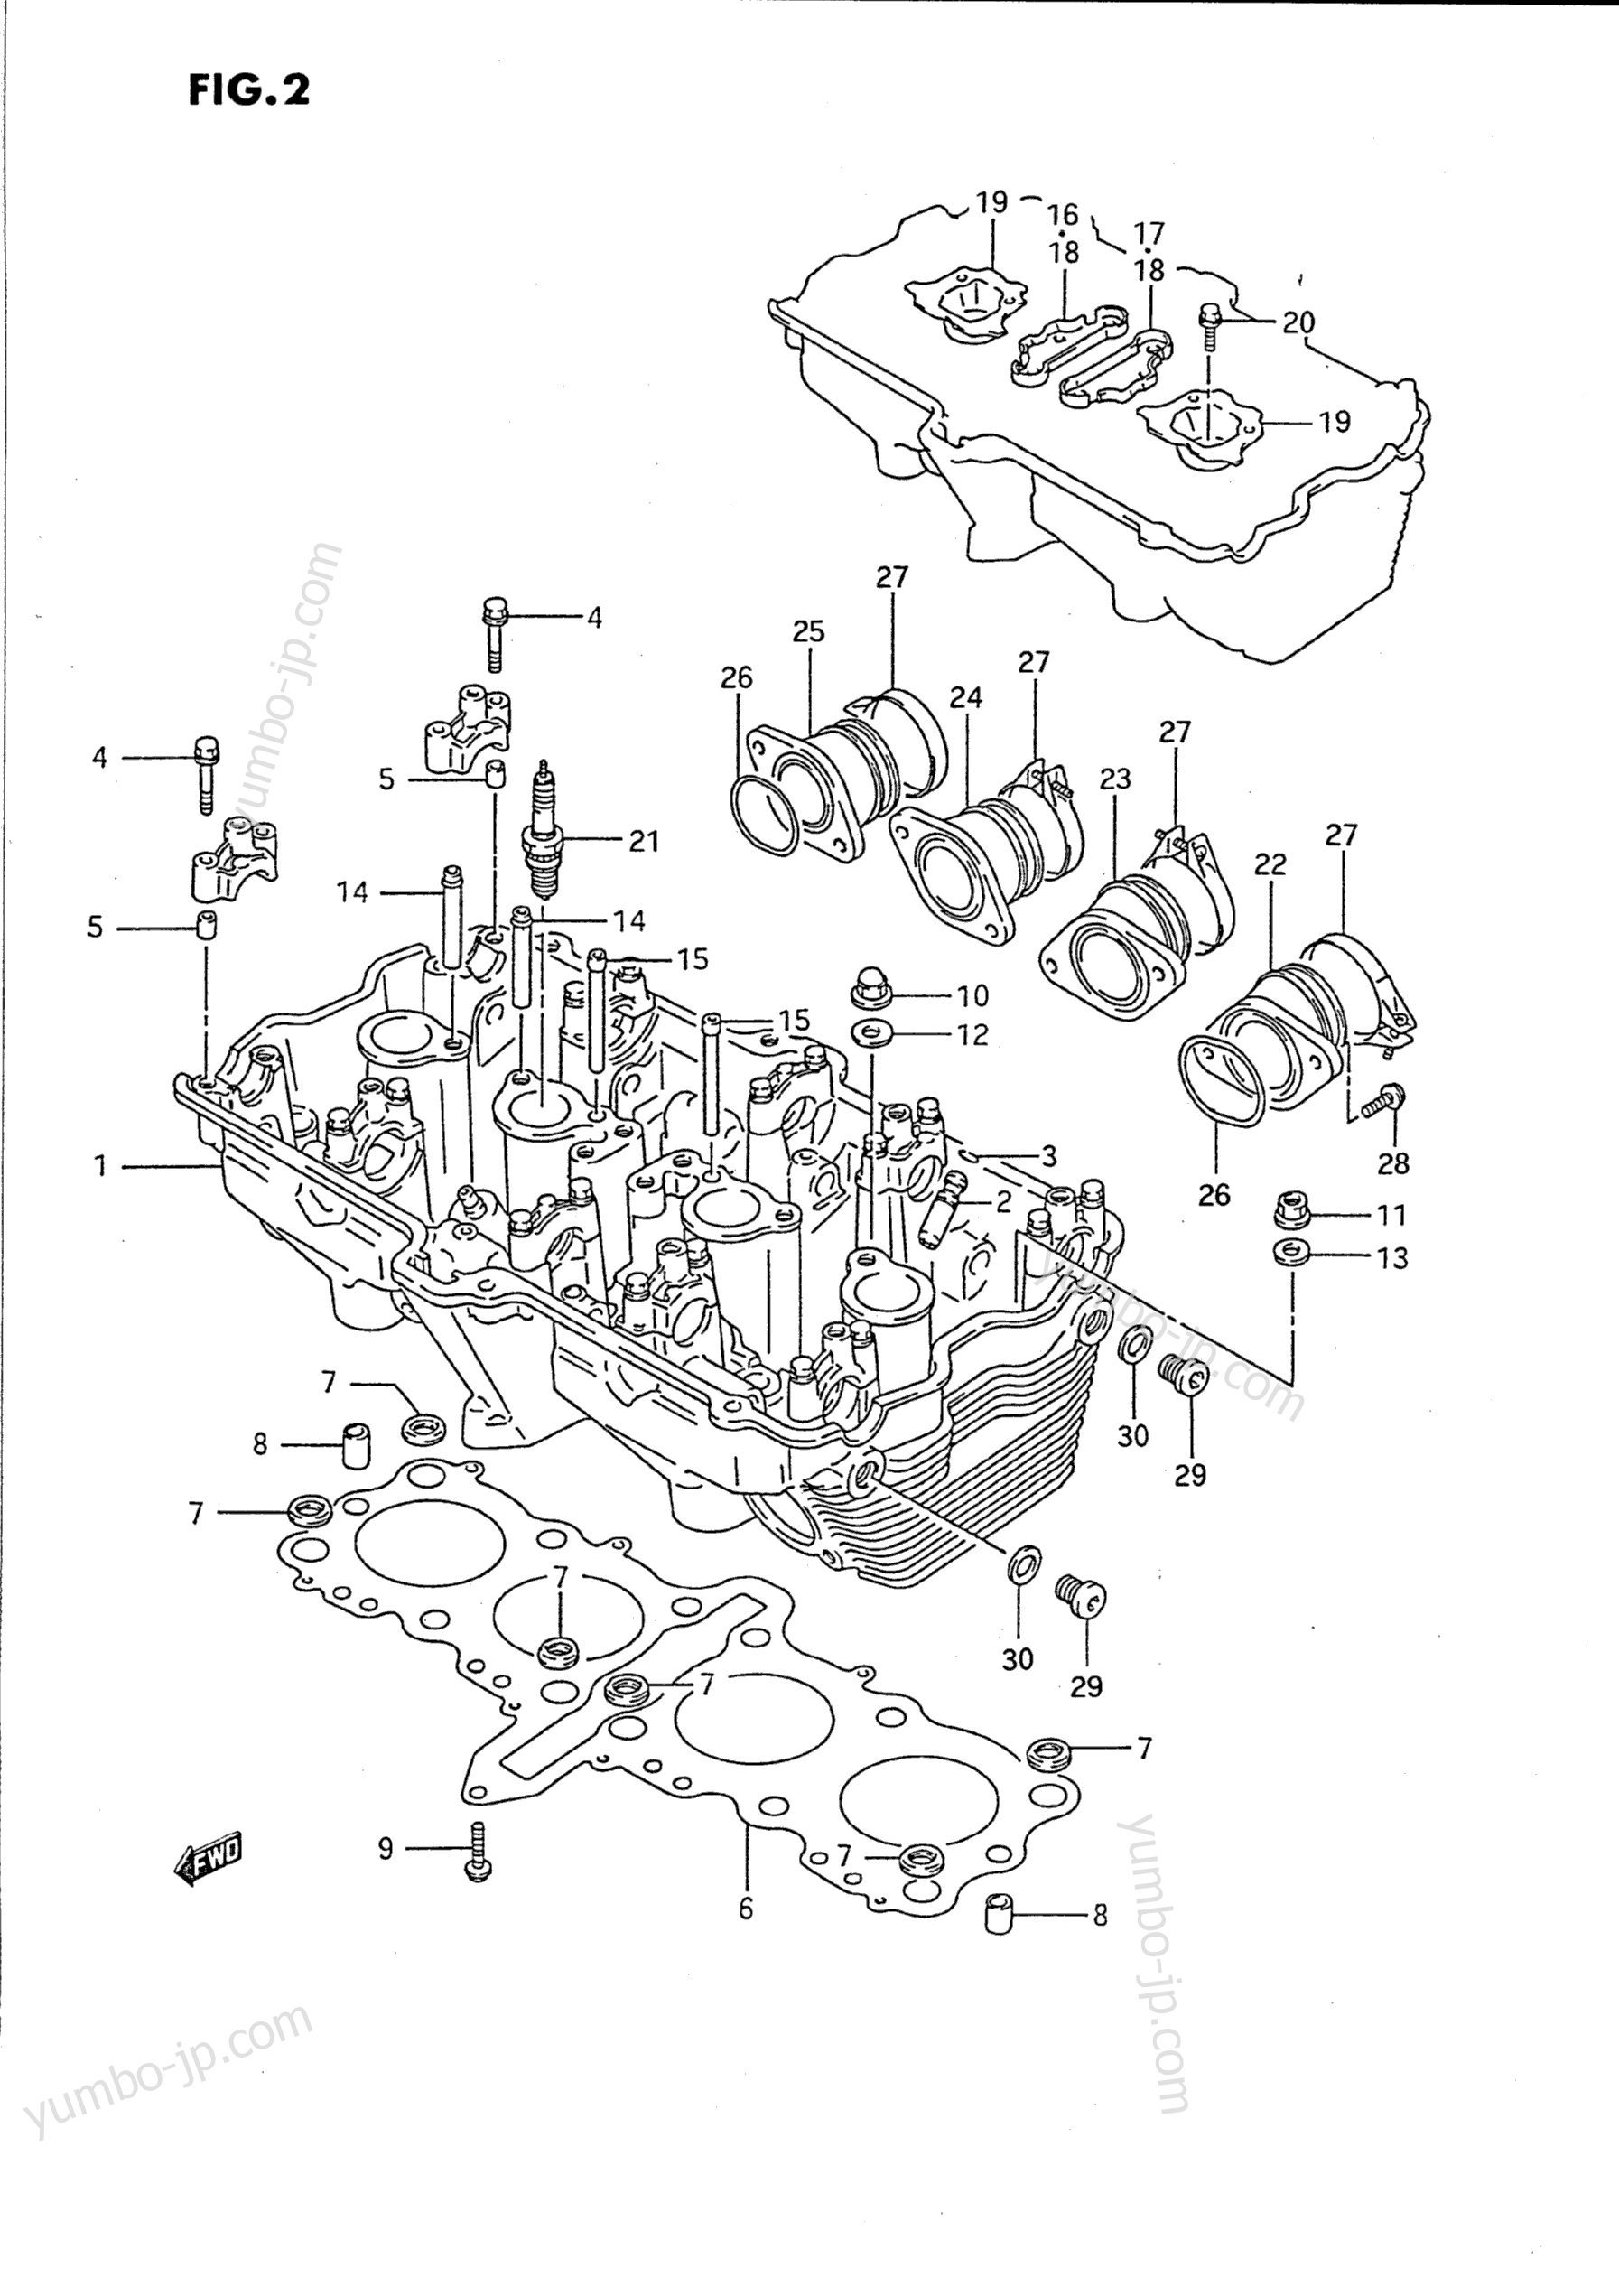 Головка блока цилиндров для мотоциклов SUZUKI Katana (GSX750F) 1991 г.